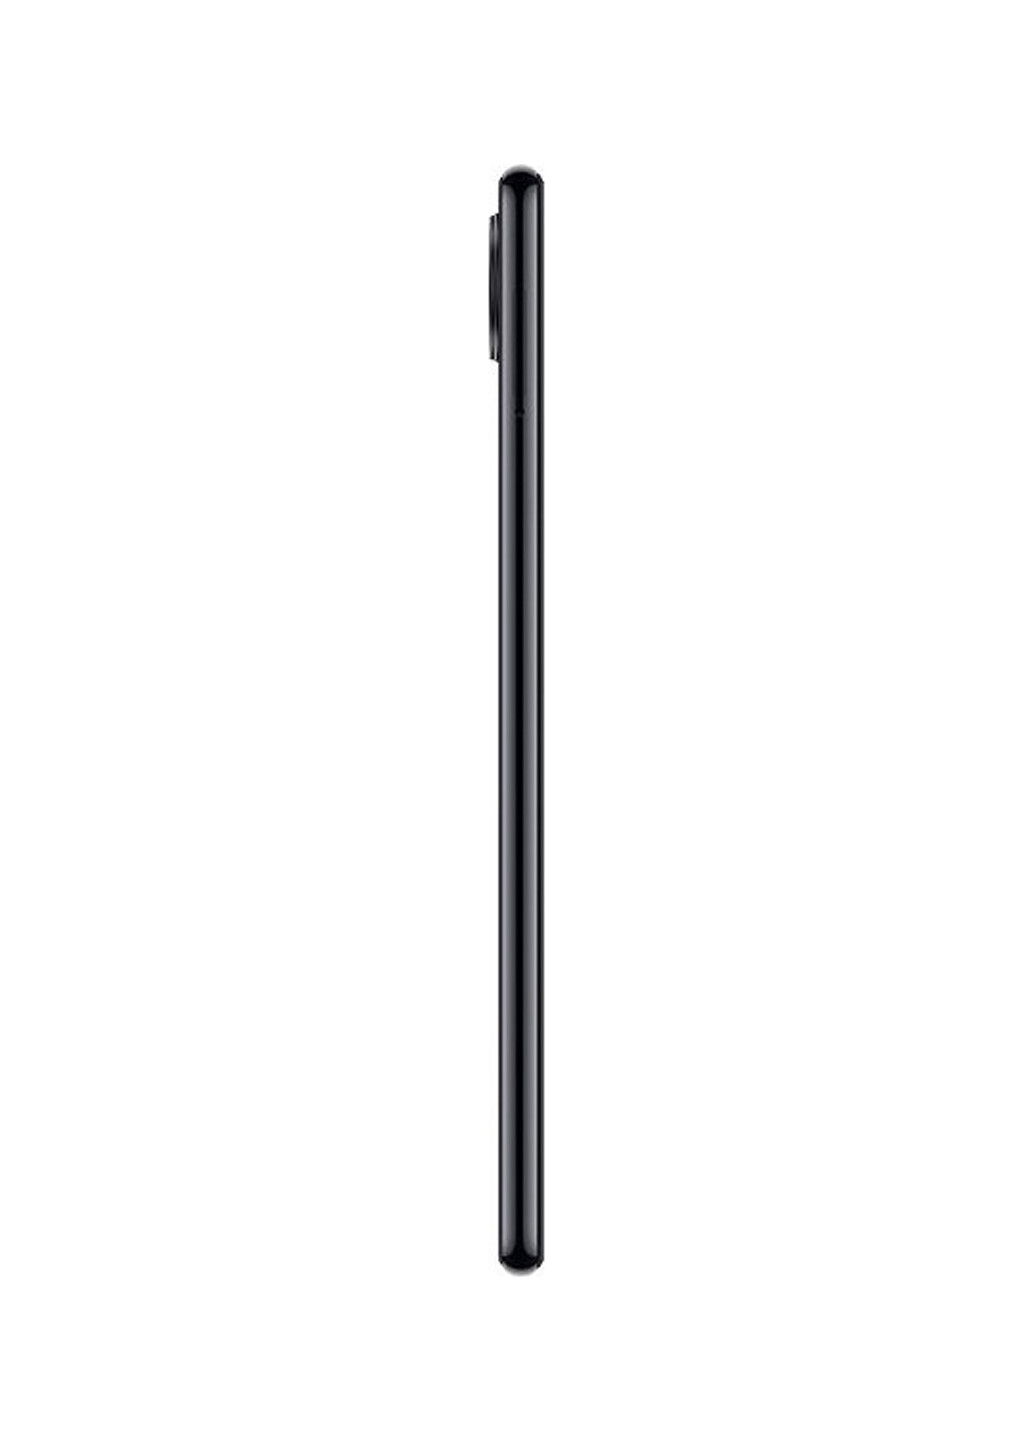 Смартфон Redmi Note 7 3 / 32GB Space Black Xiaomi redmi note 7 3/32gb space black (130547942)